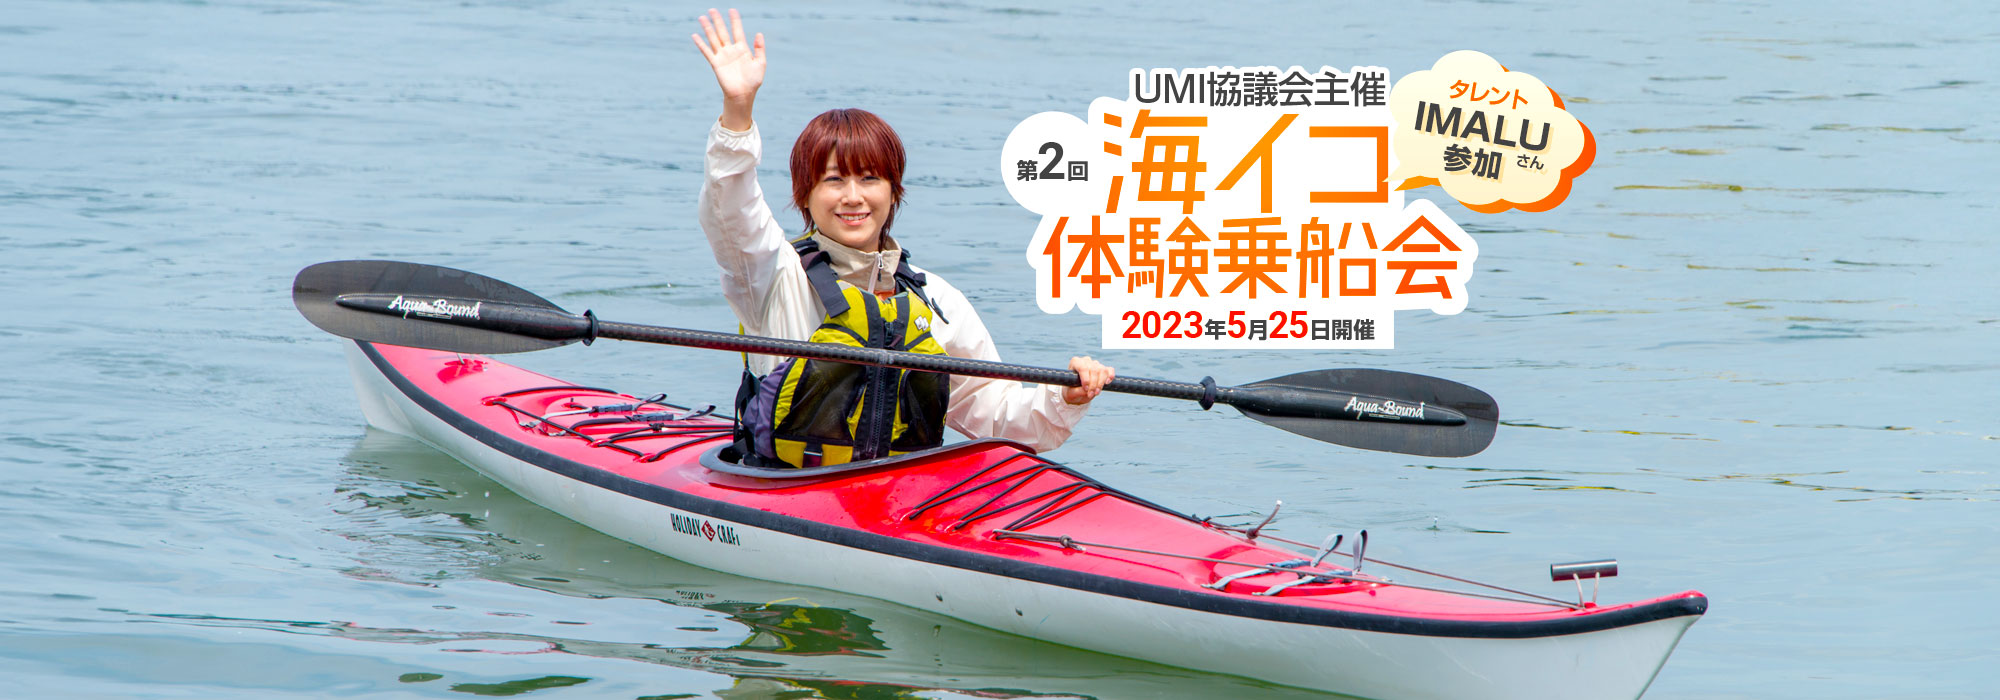 タレント IMALUさん参加！ UMI協議会主催 第2回 海イコ体験乗船会 2023年5月25日開催